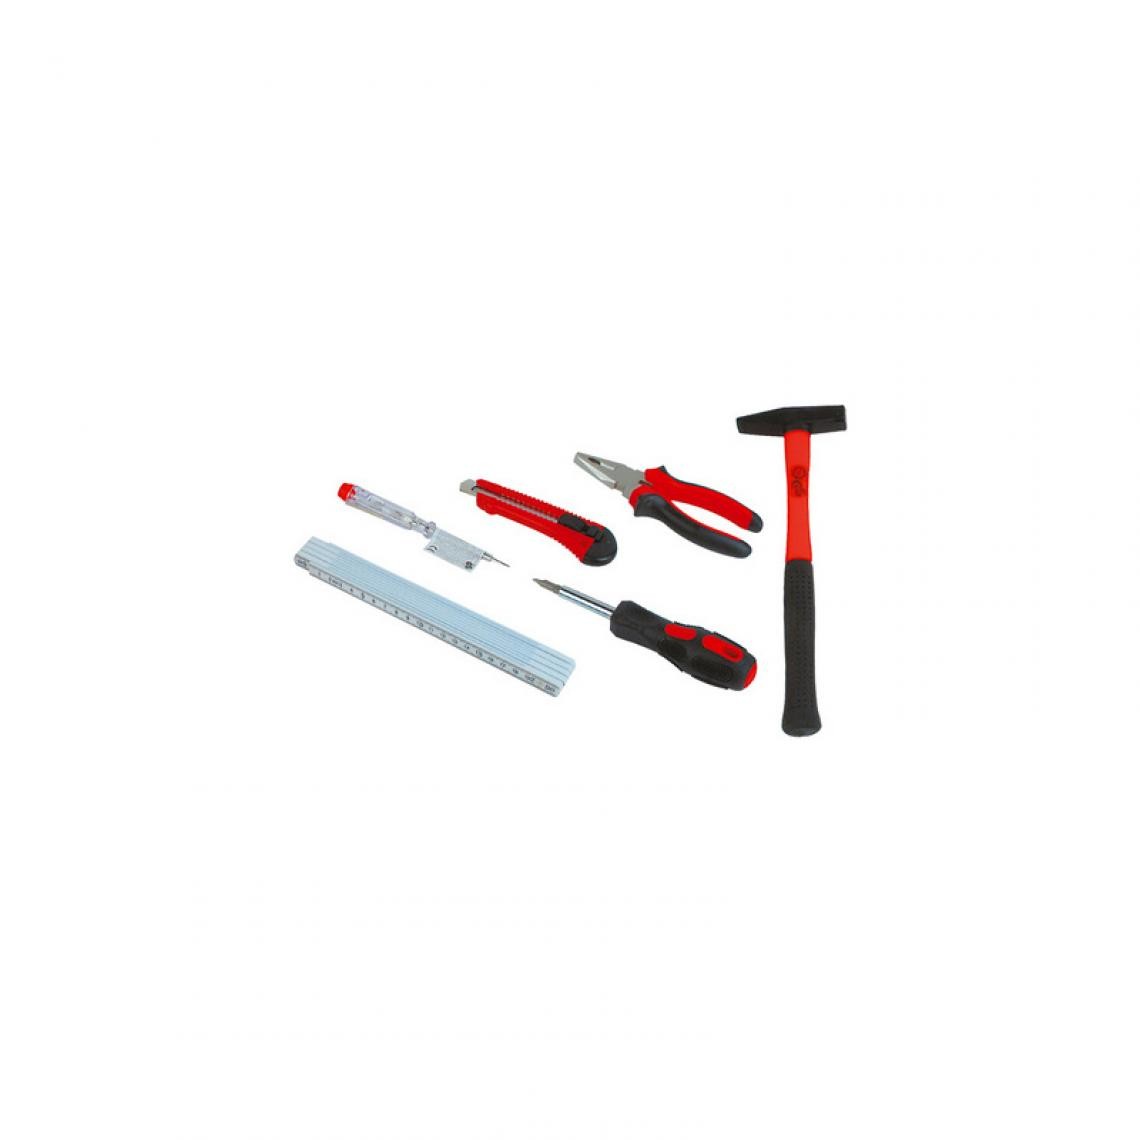 Bruder Mannesmann - BRÜDER MANNESMANN Sac avec kit d'outils 7 pièces, noir/rouge () - Boîtes à outils